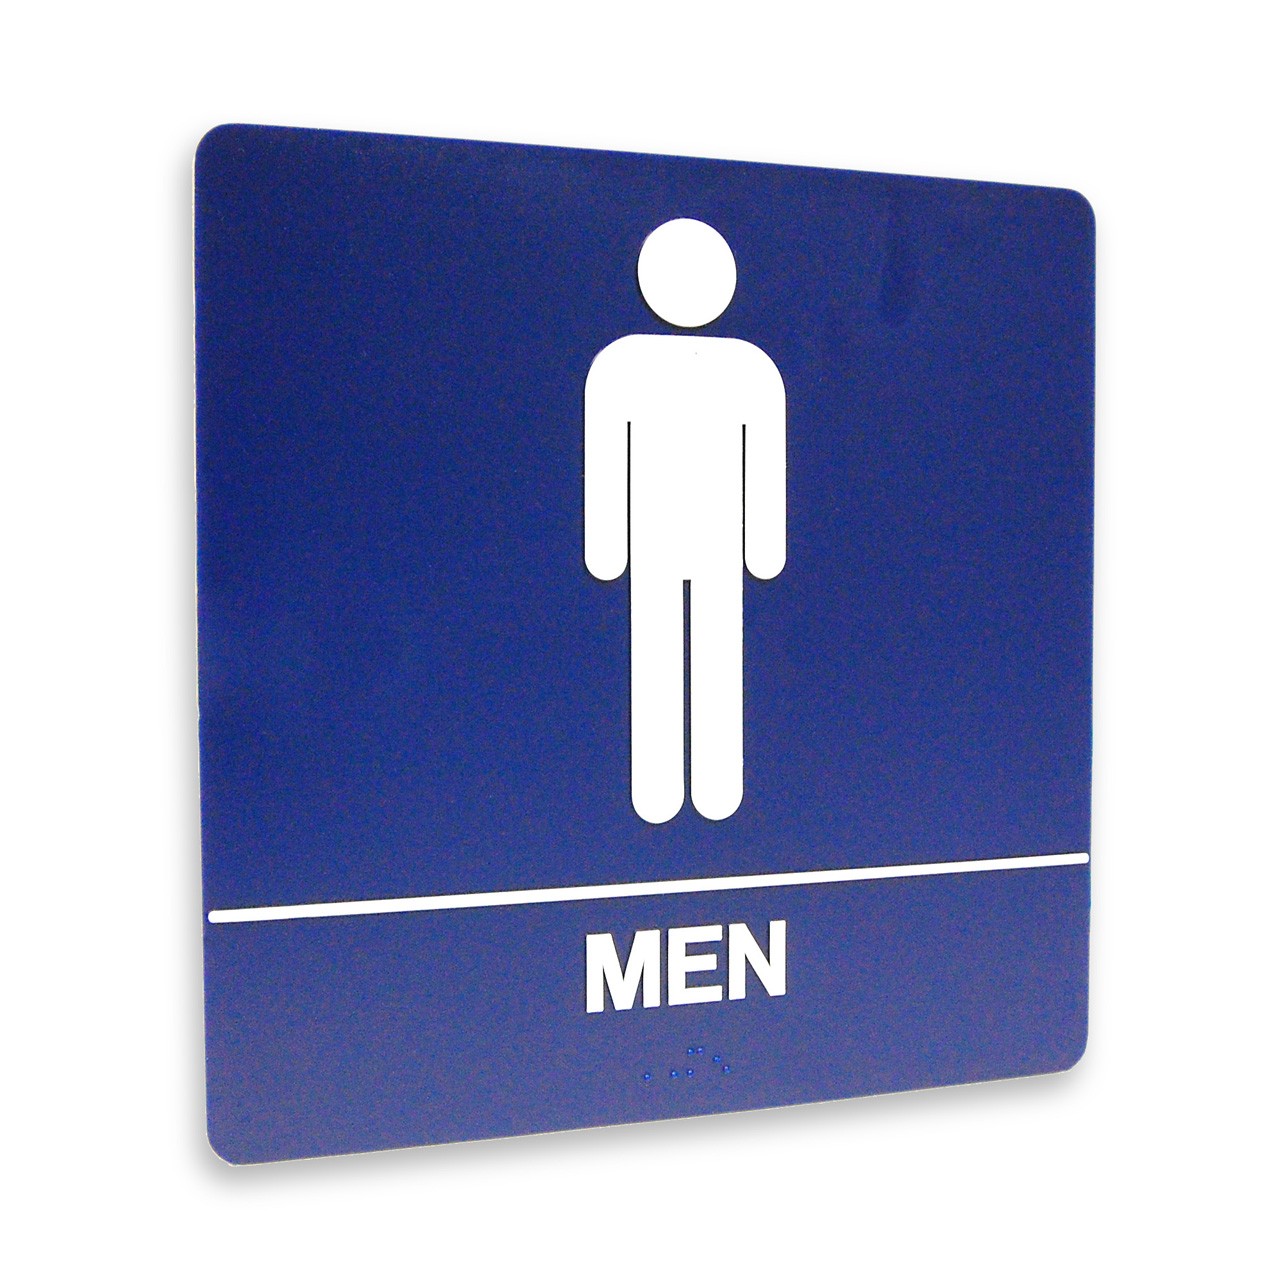 8" x 8" Restroom Sign - "MEN", (4) Standard Colors - The Kroy Sign ...